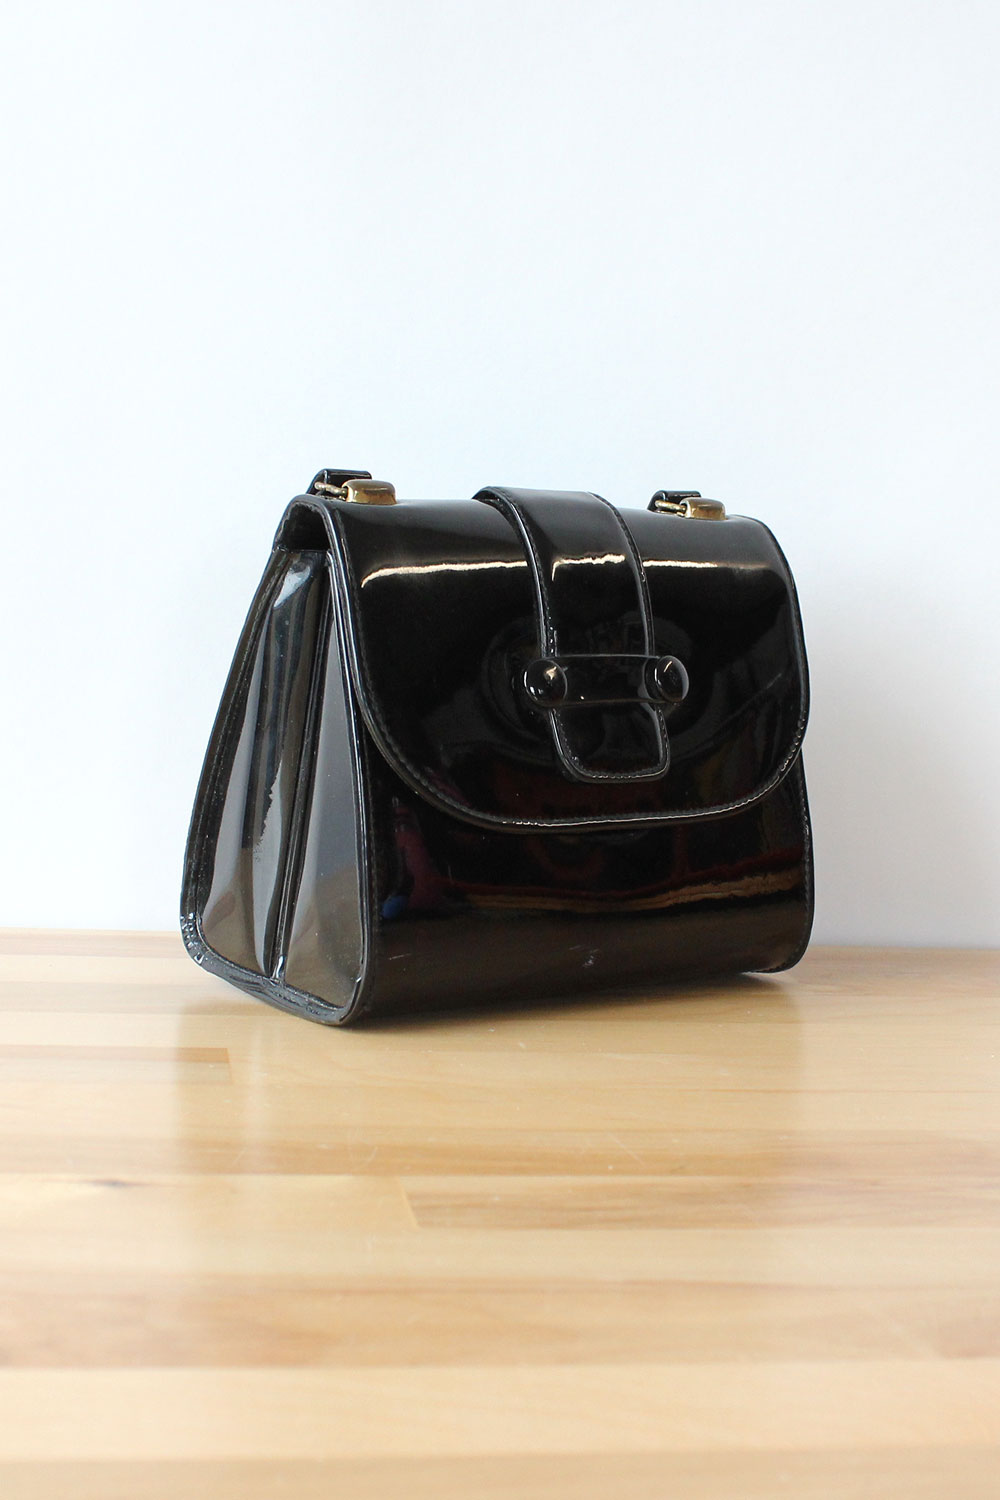 Glossy Black Handbag